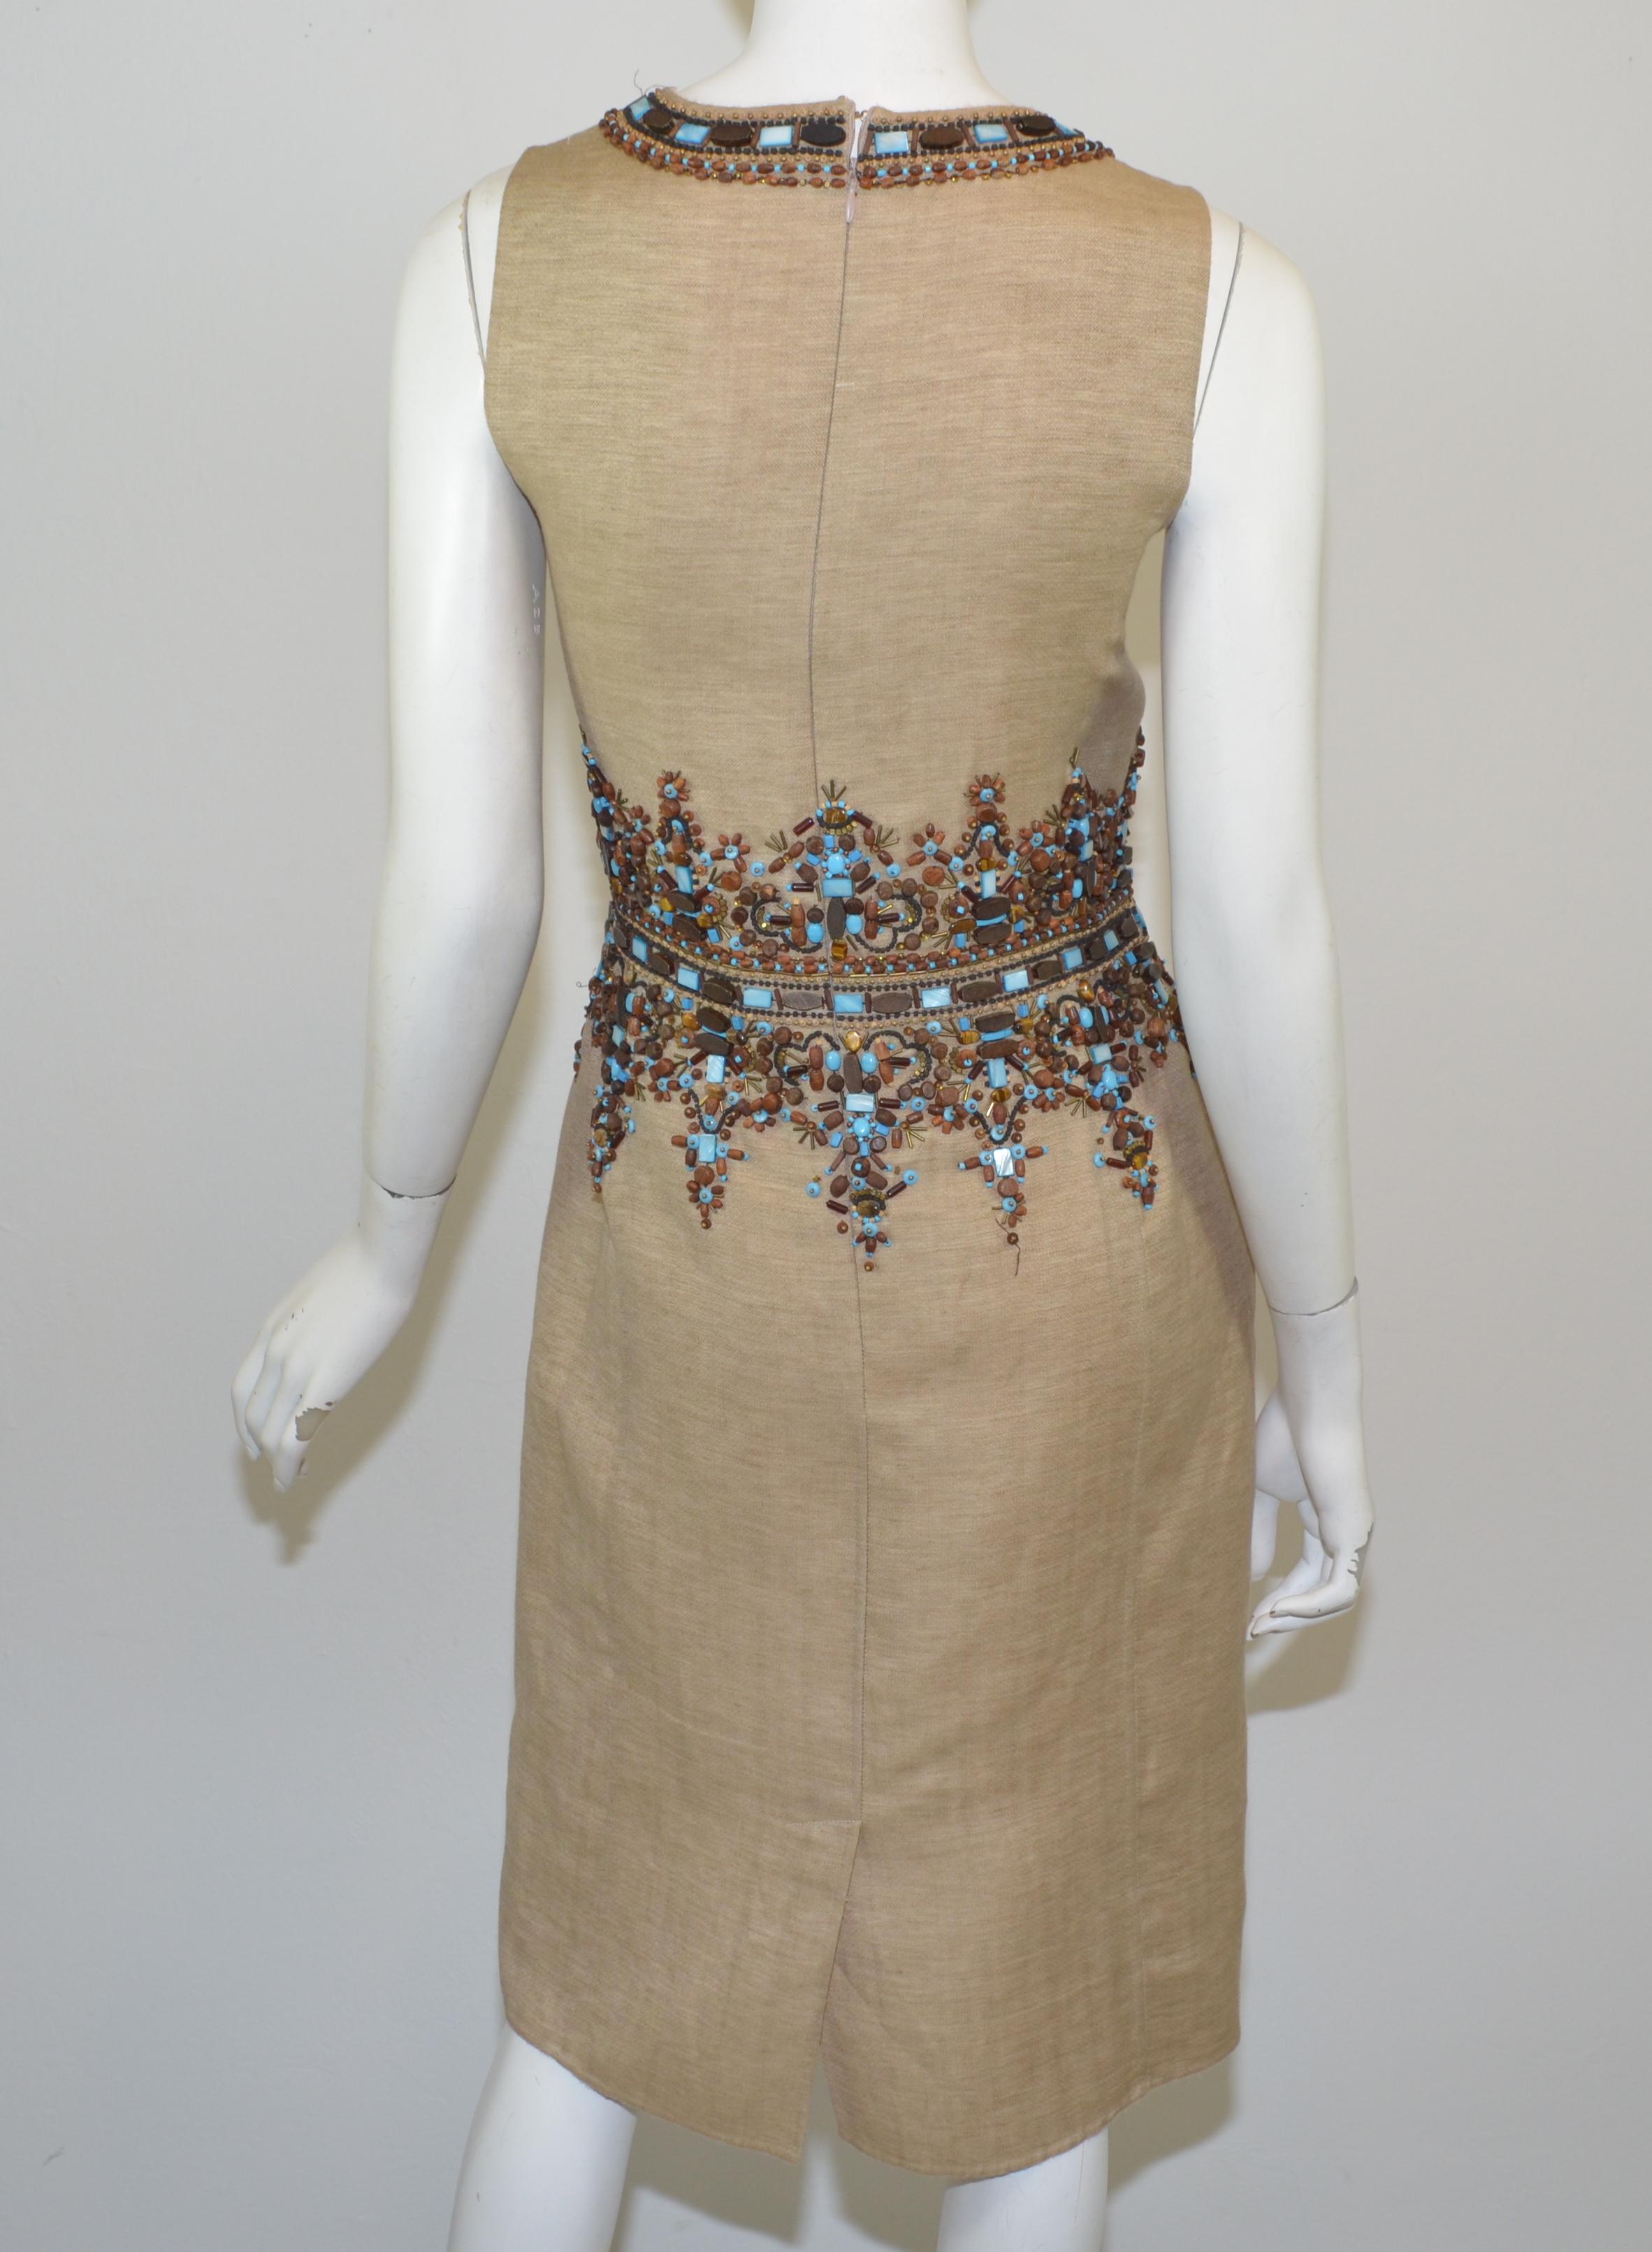 Das Kleid von Oscar de la Renta ist aus einer Leinenmischung gefertigt und hat eine schöne Perlenverzierung am Ausschnitt und an der Taille. Das Kleid hat einen Reißverschluss am Rücken und einen Haken- und Ösenverschluss.